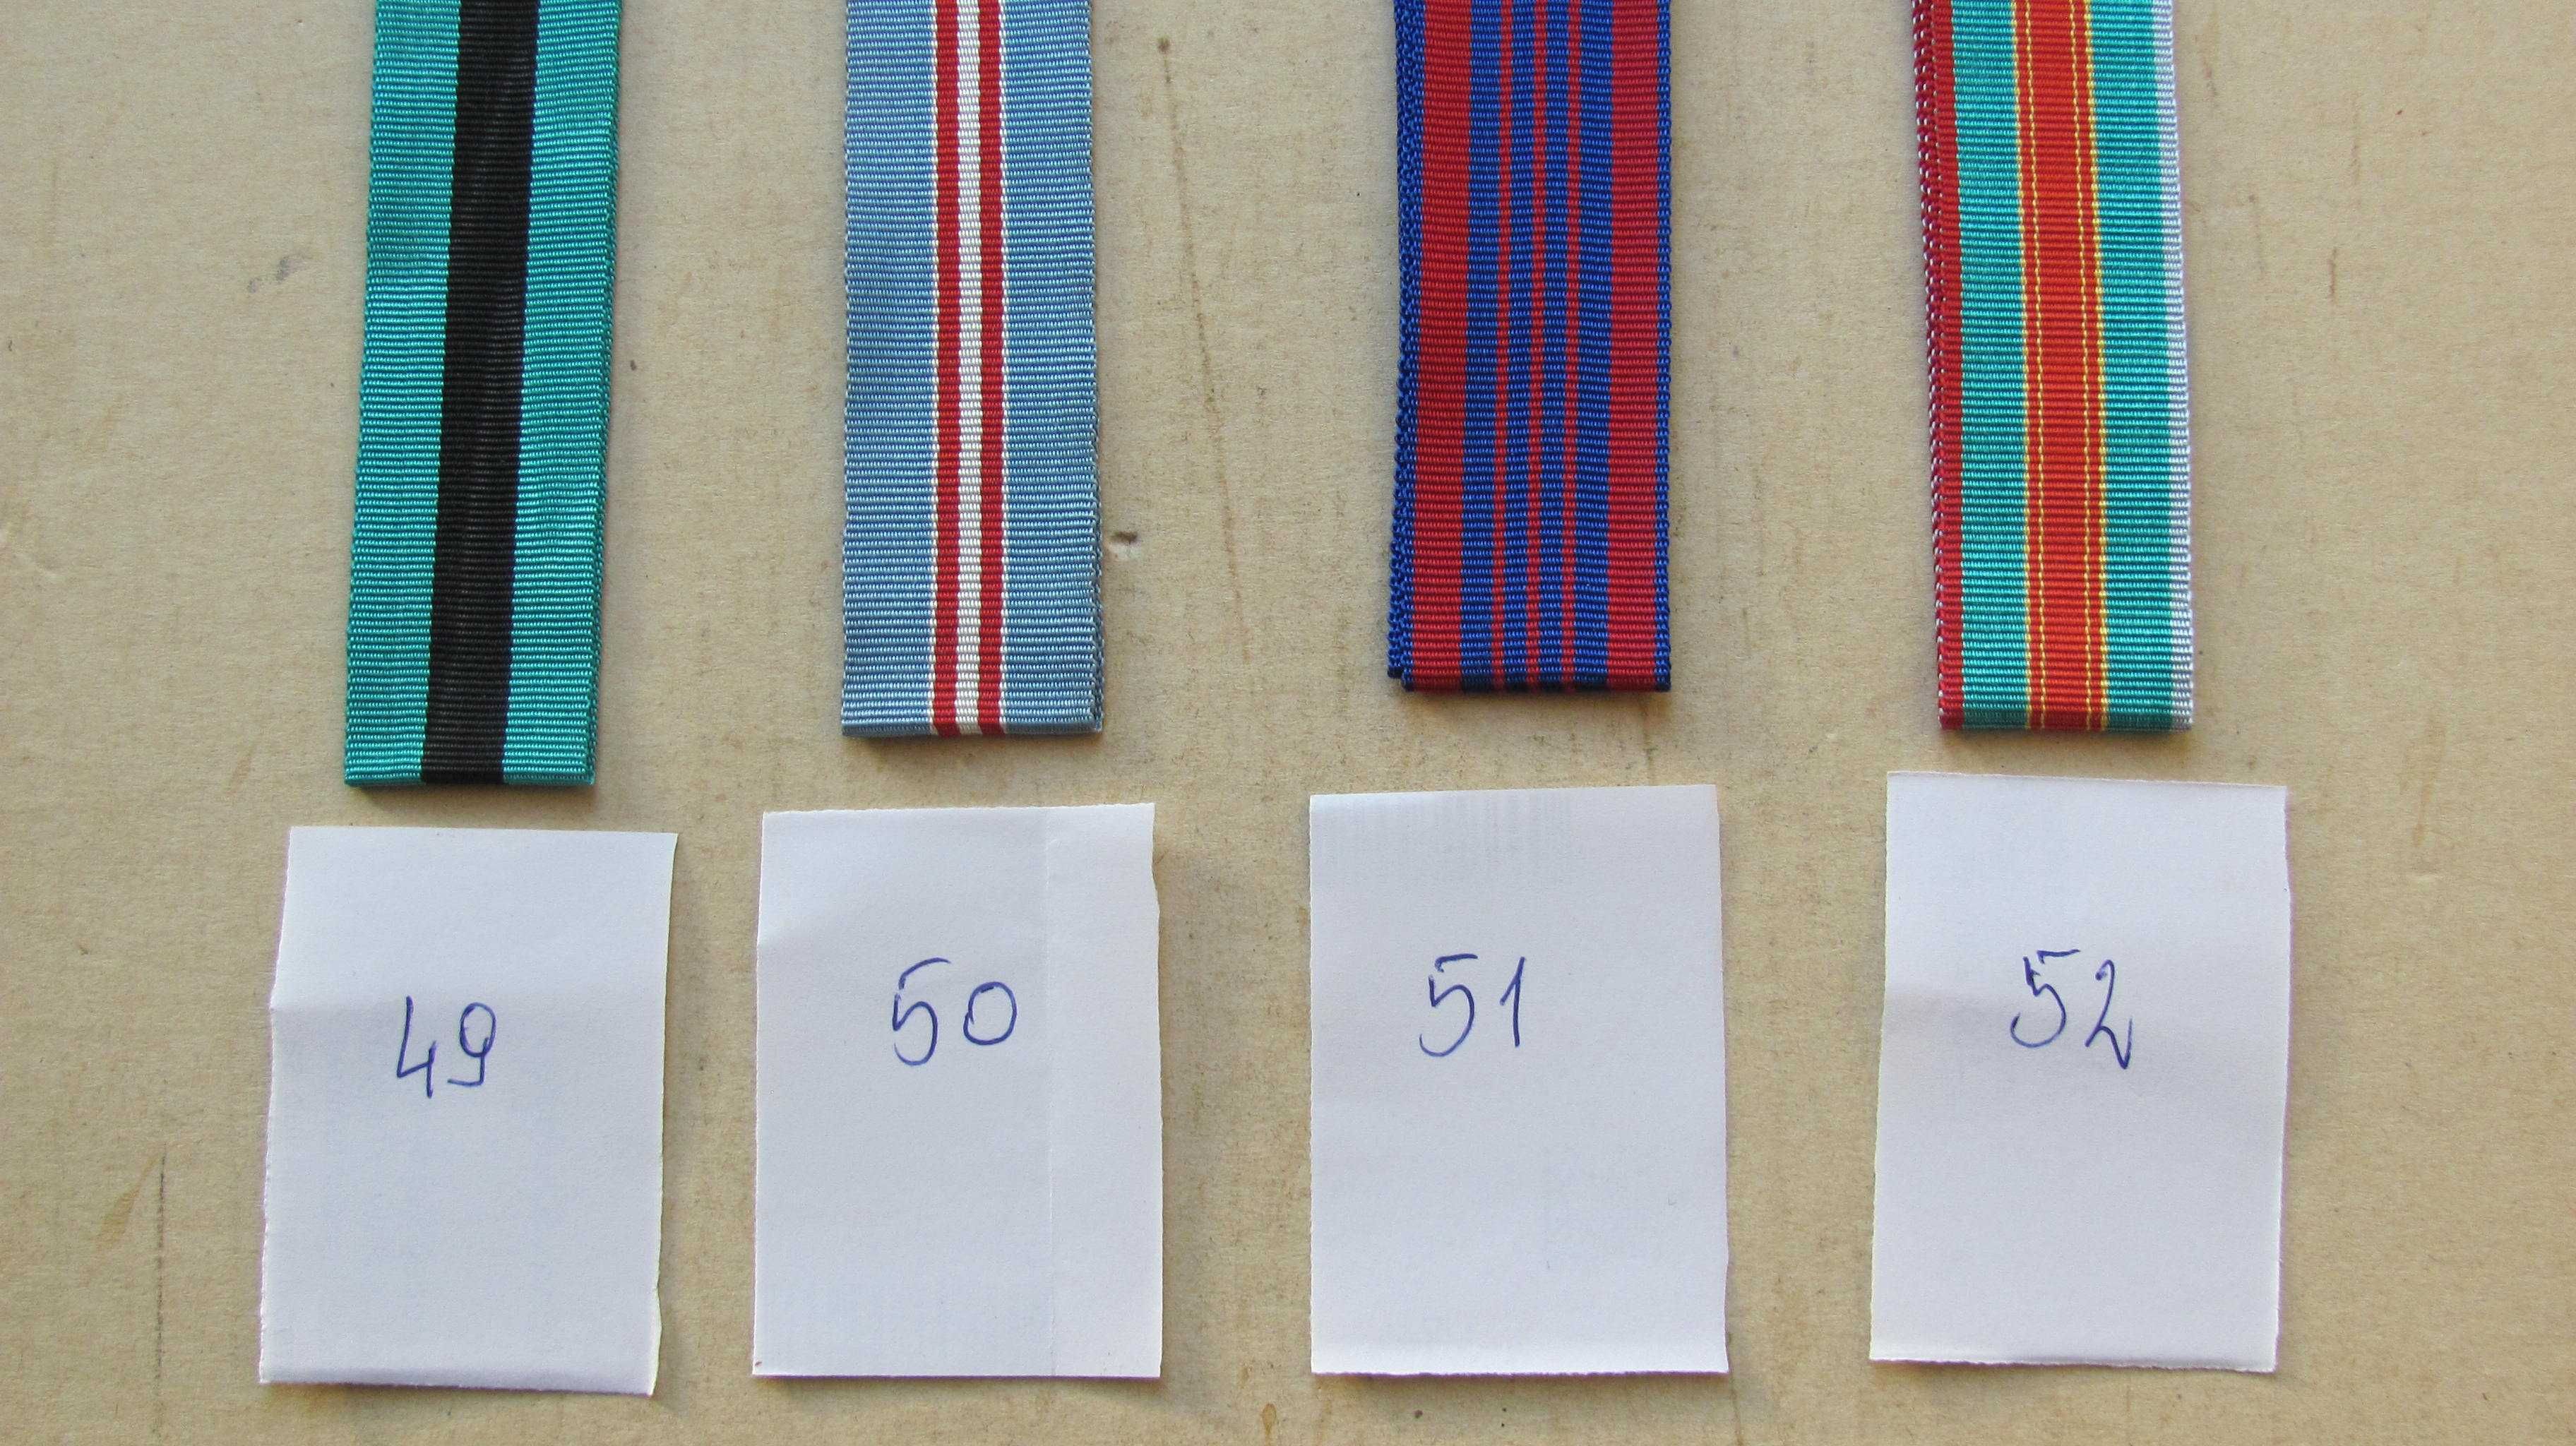 Wstążki do Medali byłego Związku Radzieckiego,  oryginalne  41 - 58